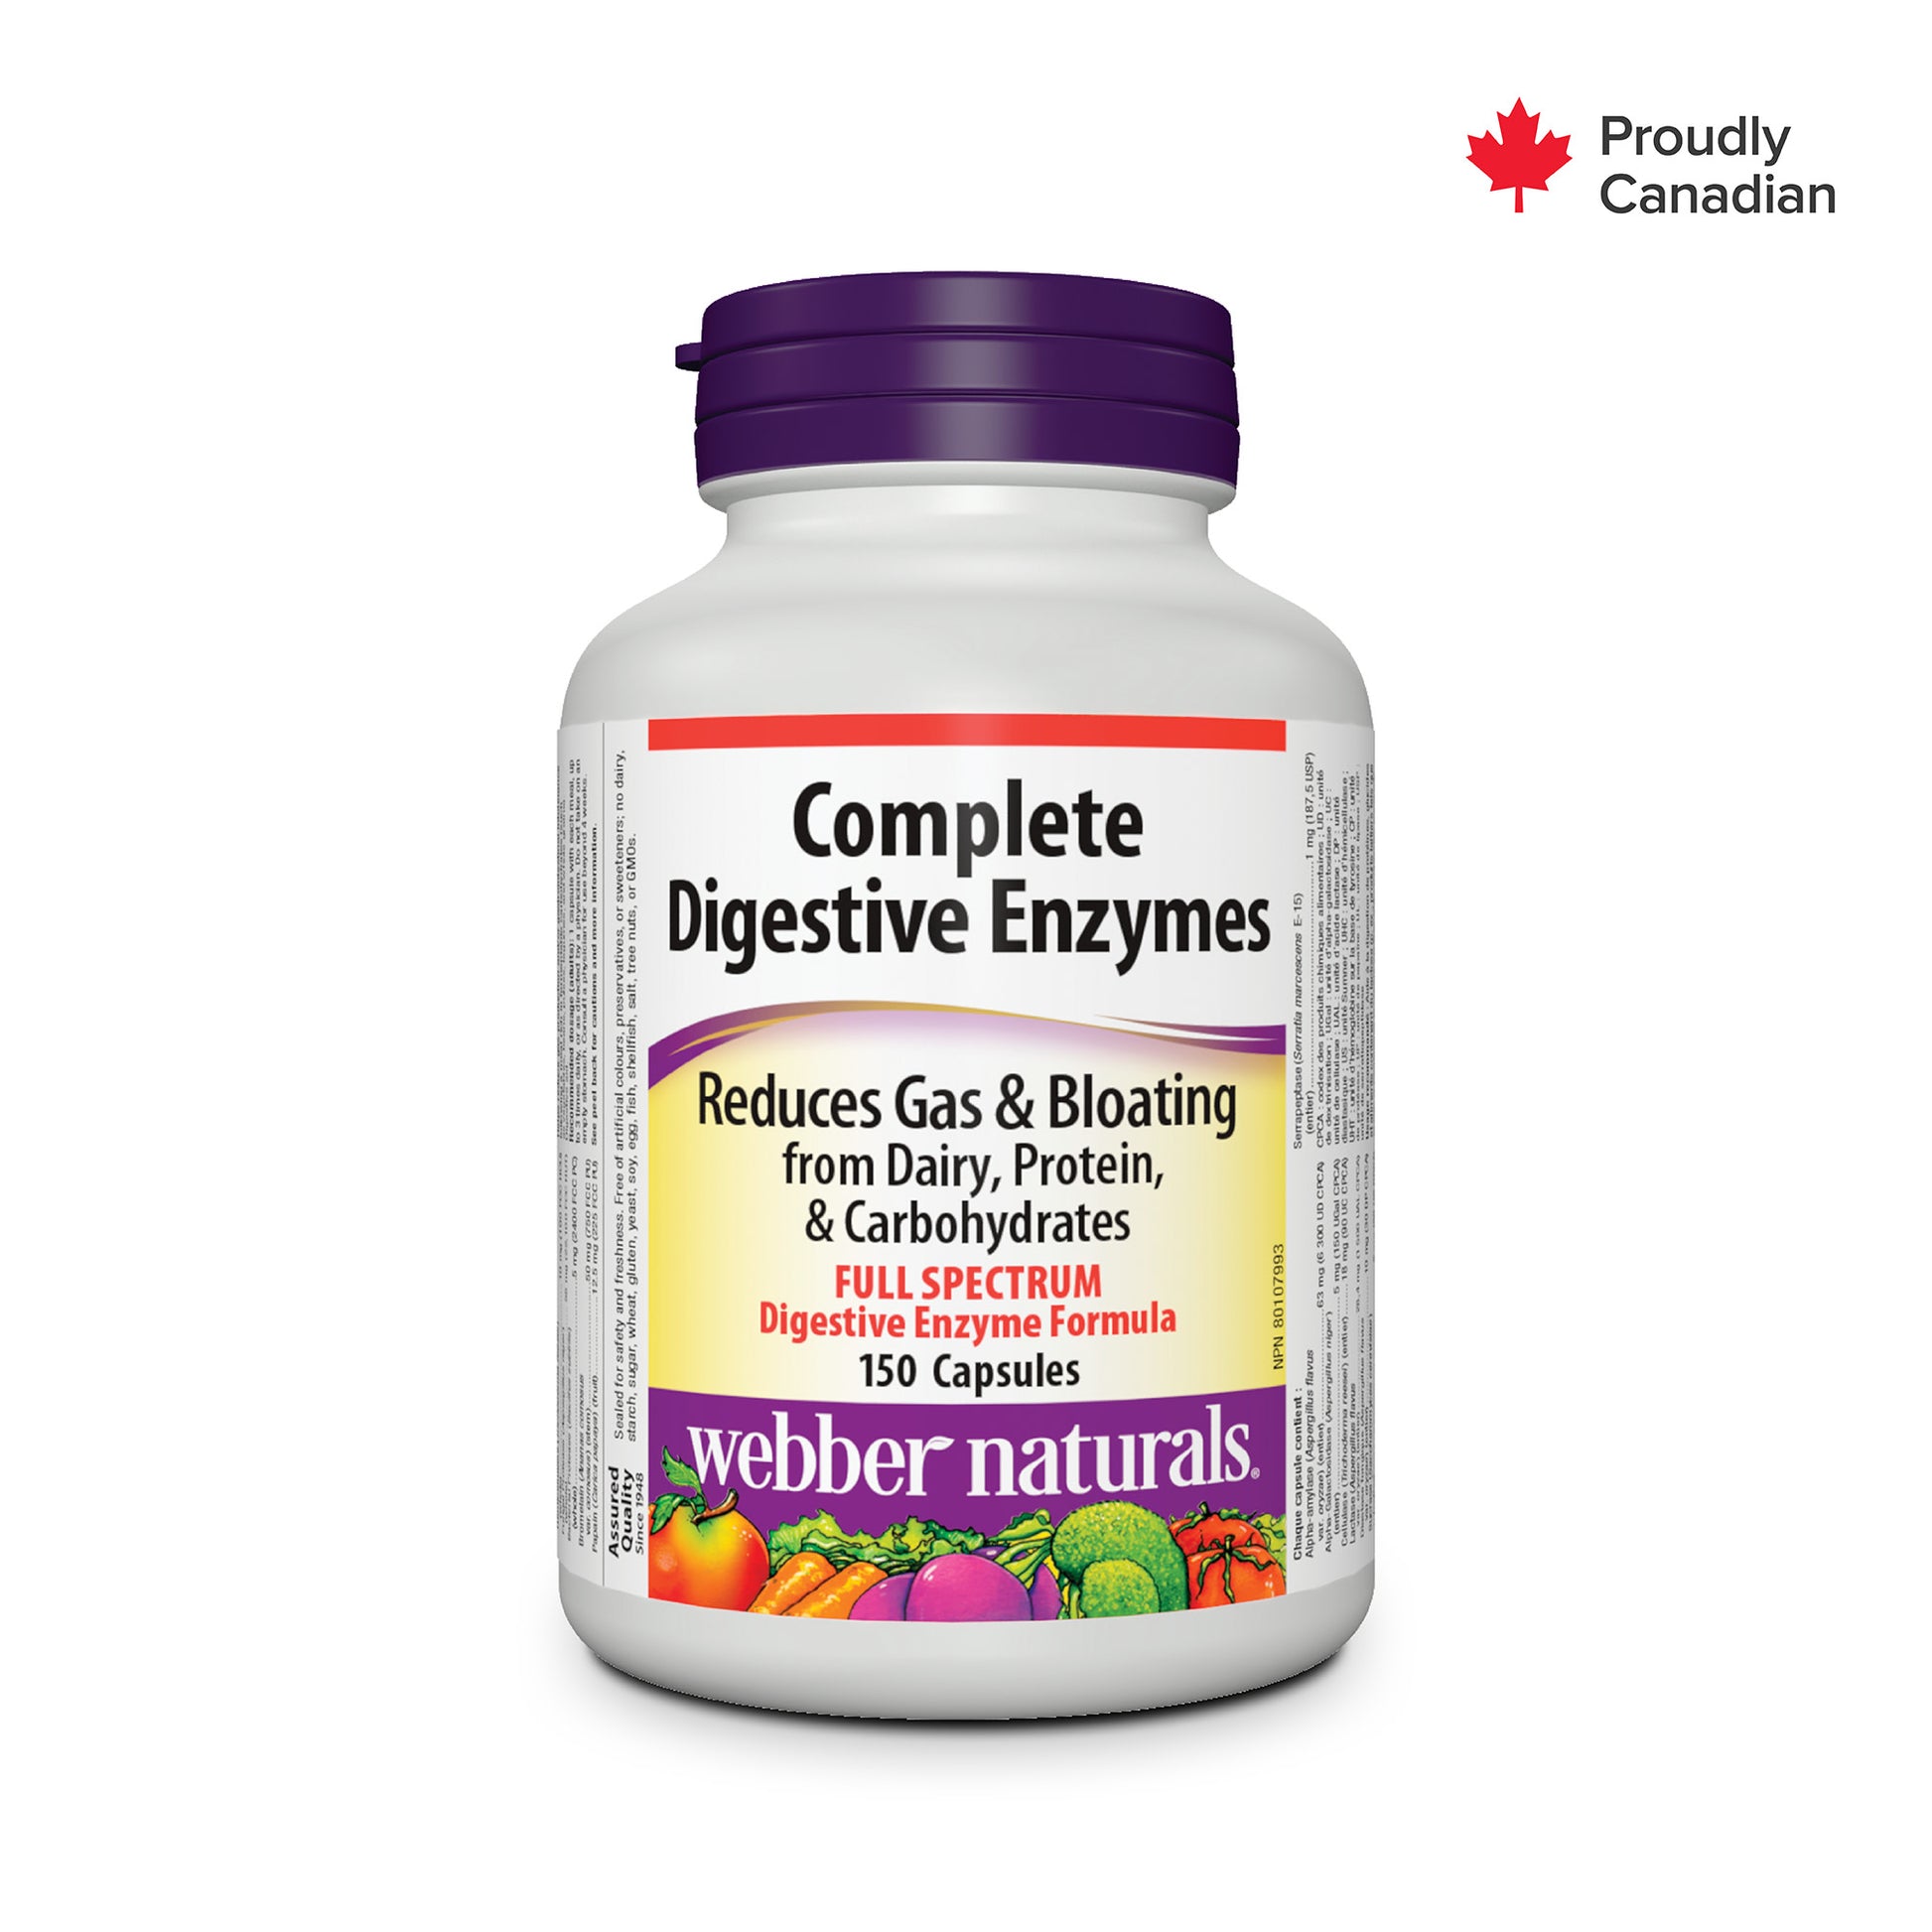 Complete Digestive Enzymes for Webber Naturals|v|hi-res|WN5279